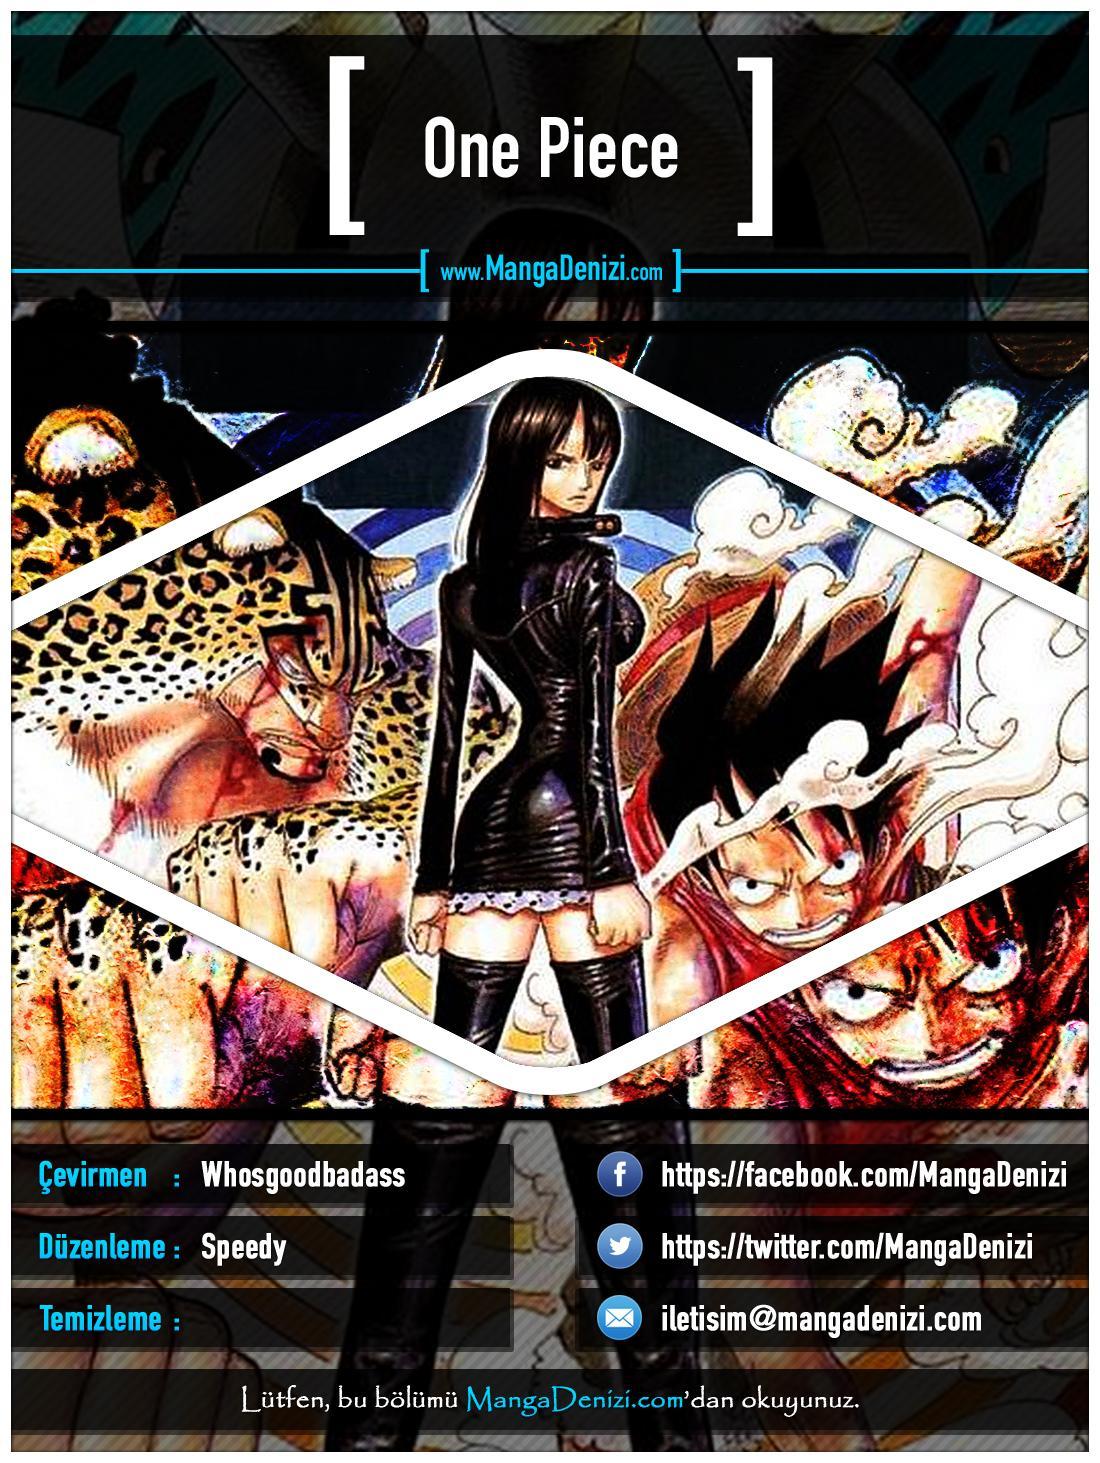 One Piece [Renkli] mangasının 0363 bölümünün 1. sayfasını okuyorsunuz.